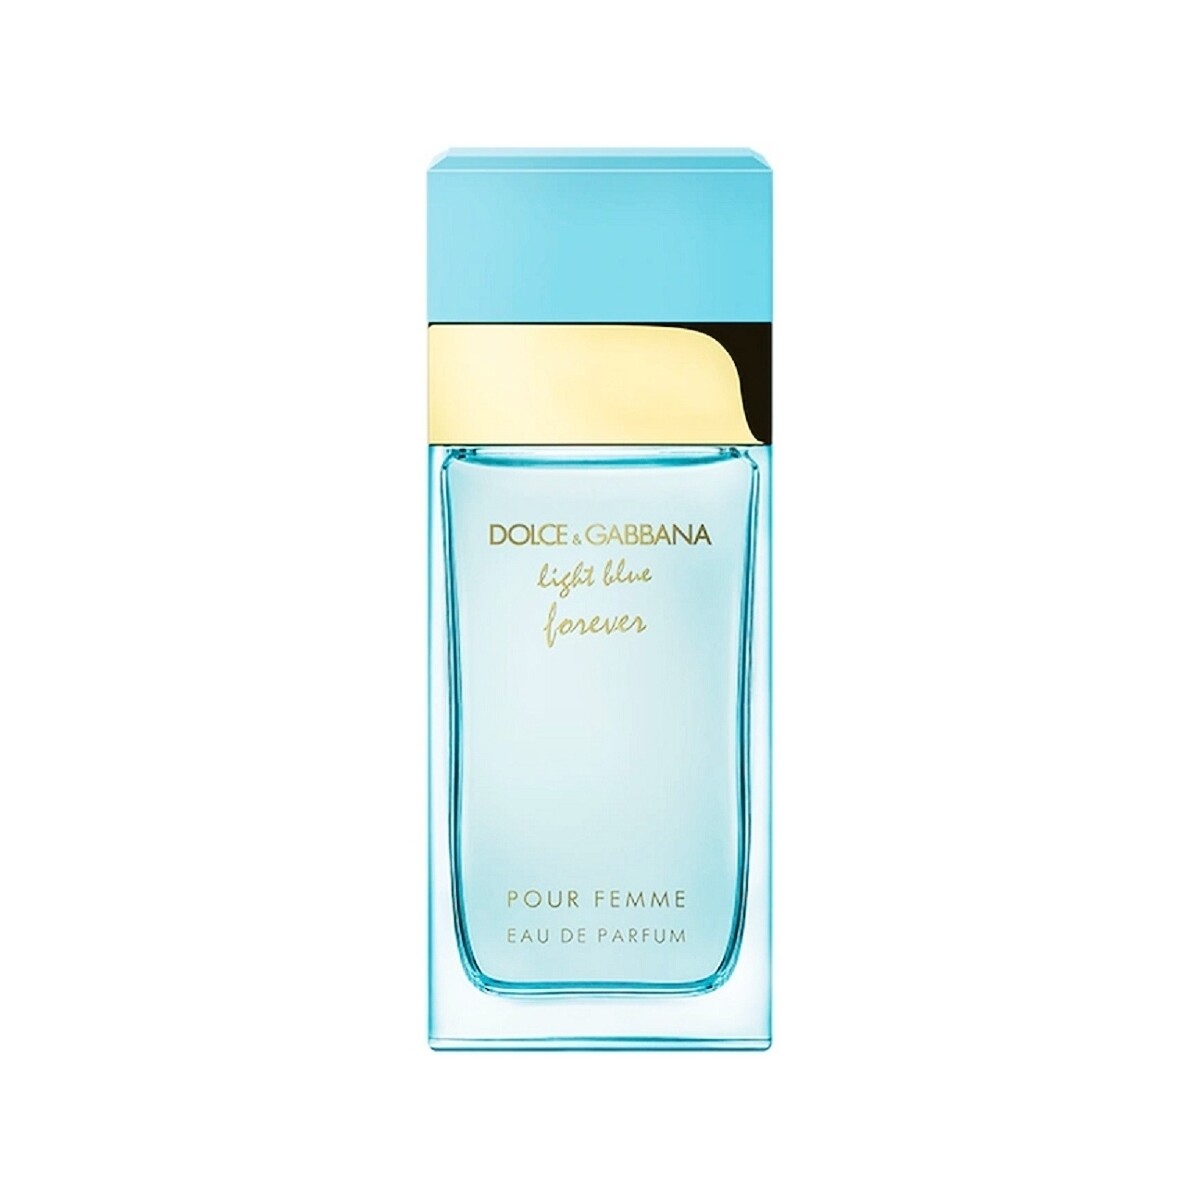 Beauty Damen Eau de parfum  D&G Light Blue Forever Femme - Parfüm - 50ml Light Blue Forever Femme - perfume - 50ml